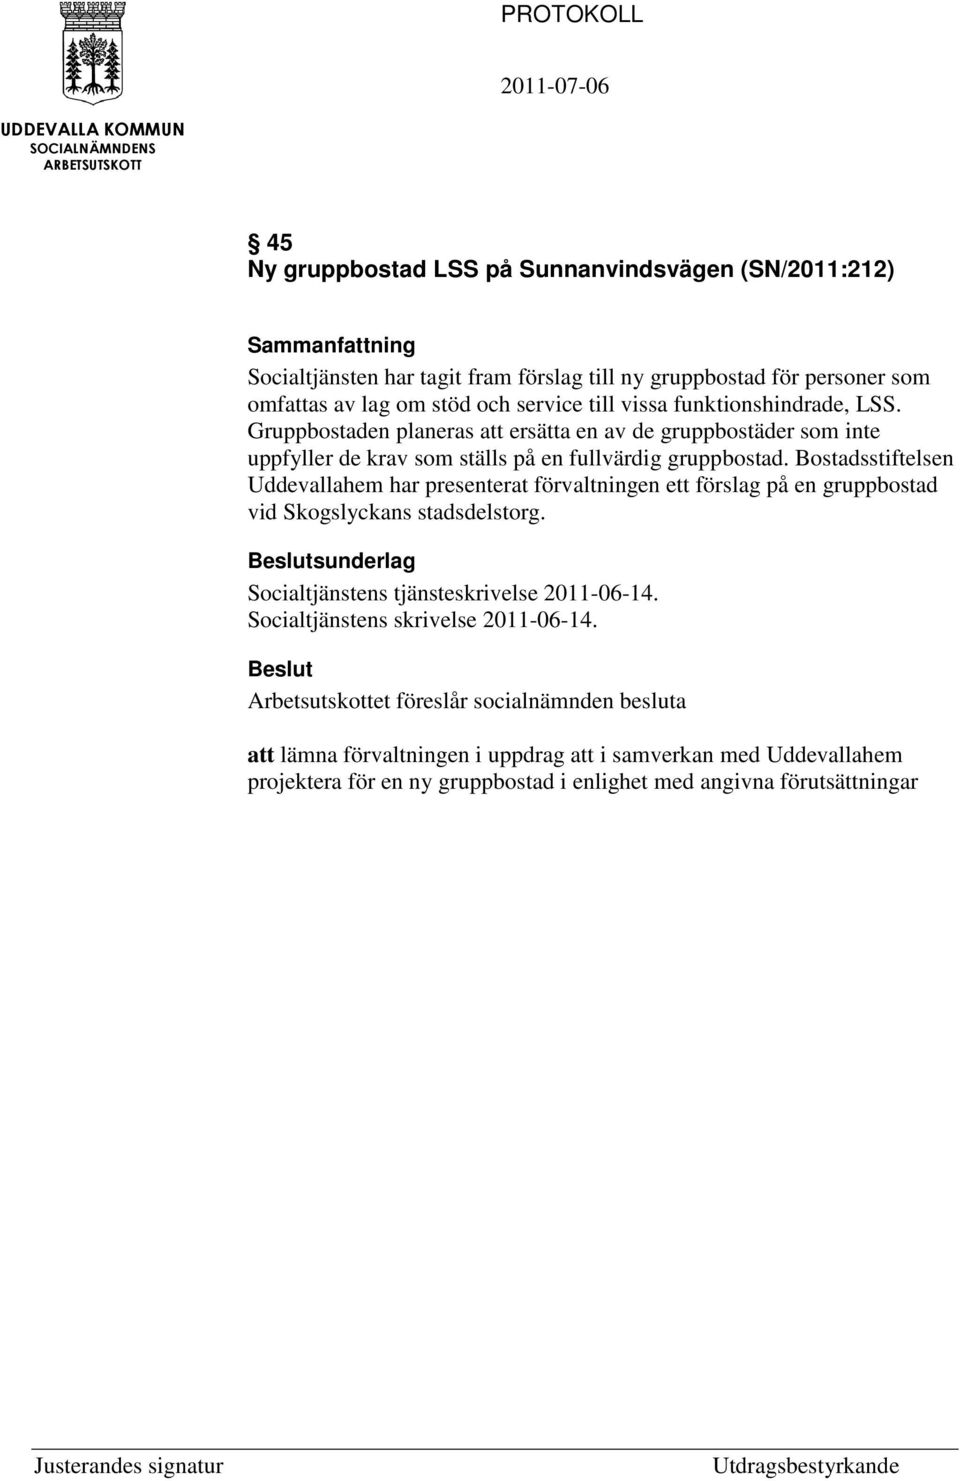 Bostadsstiftelsen Uddevallahem har presenterat förvaltningen ett förslag på en gruppbostad vid Skogslyckans stadsdelstorg. Socialtjänstens tjänsteskrivelse 2011-06-14.